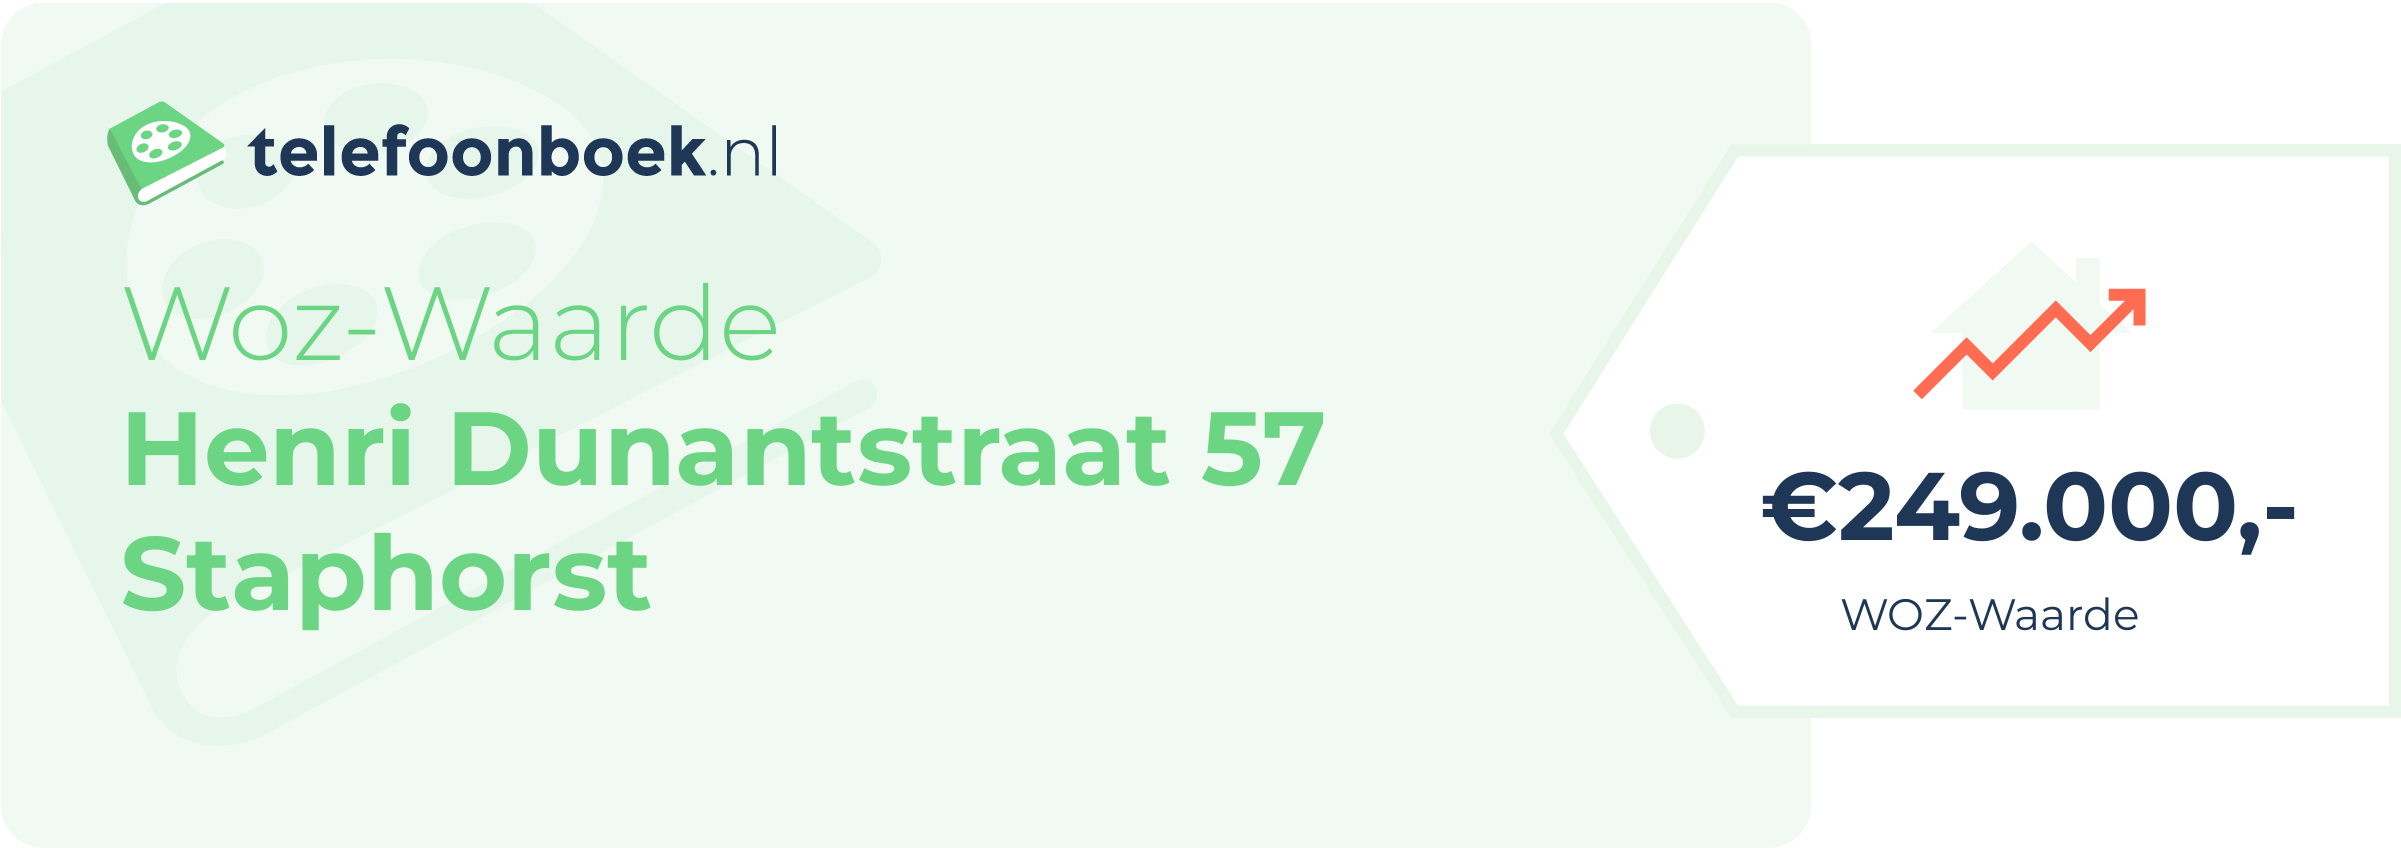 WOZ-waarde Henri Dunantstraat 57 Staphorst